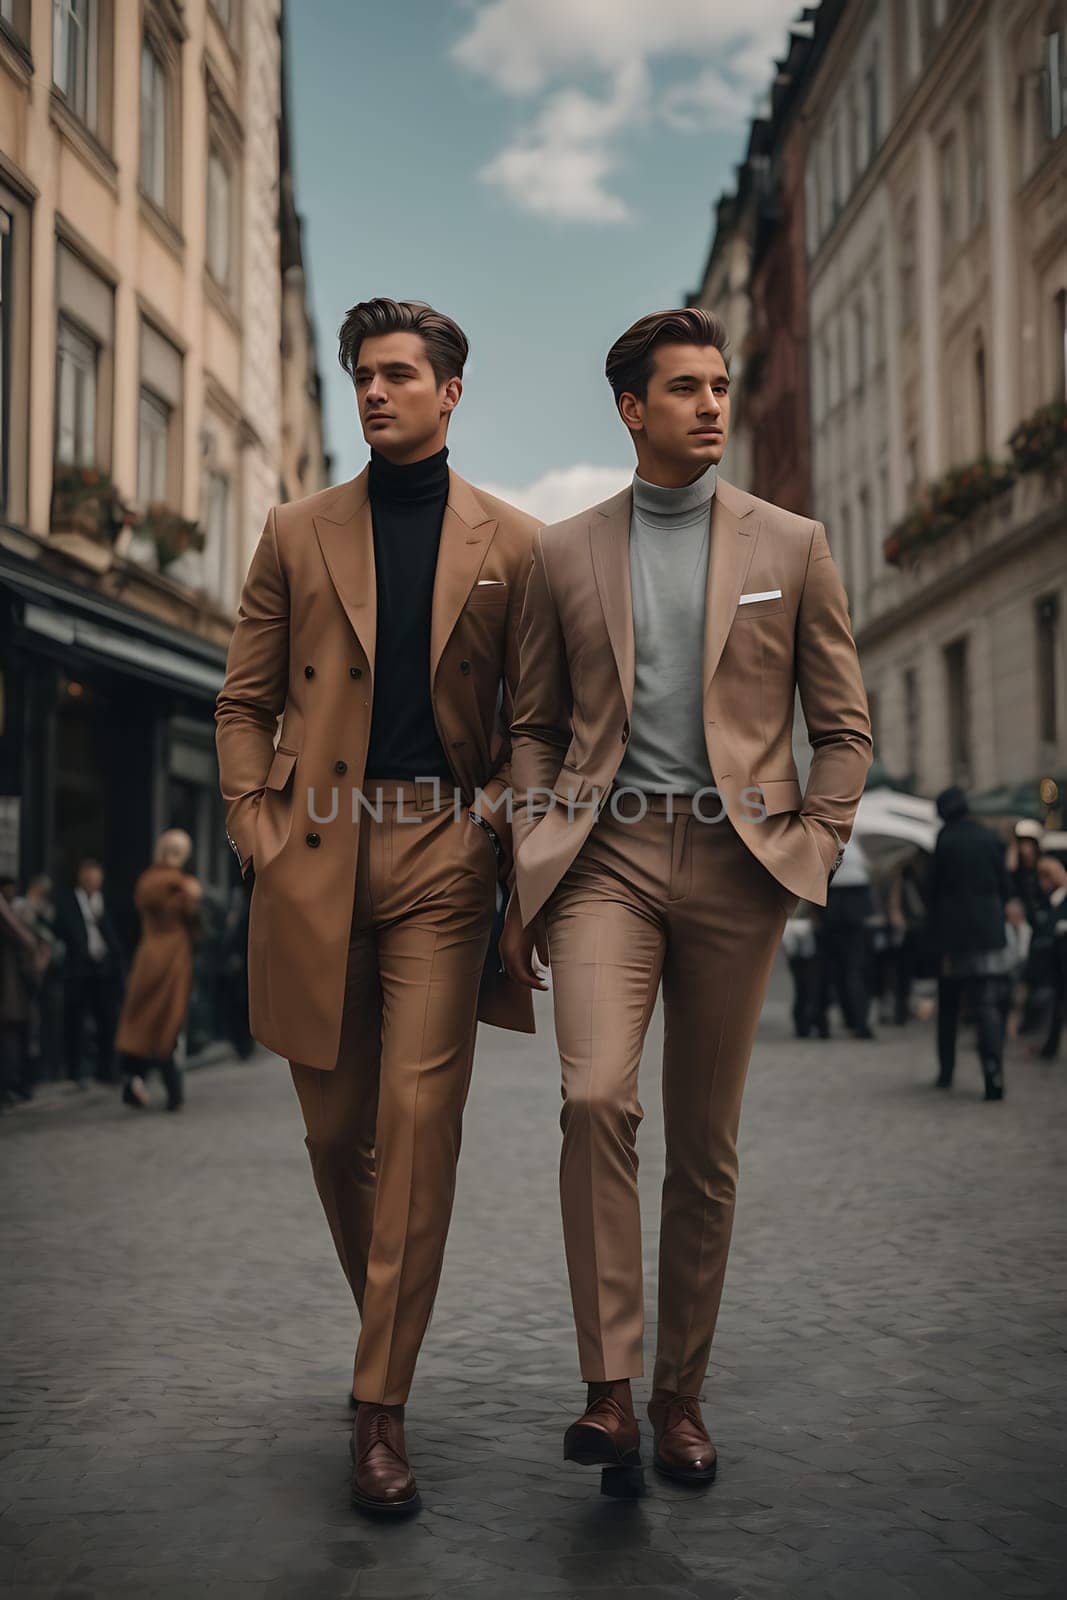 Two businessmen in formal attire walking along a city sidewalk.